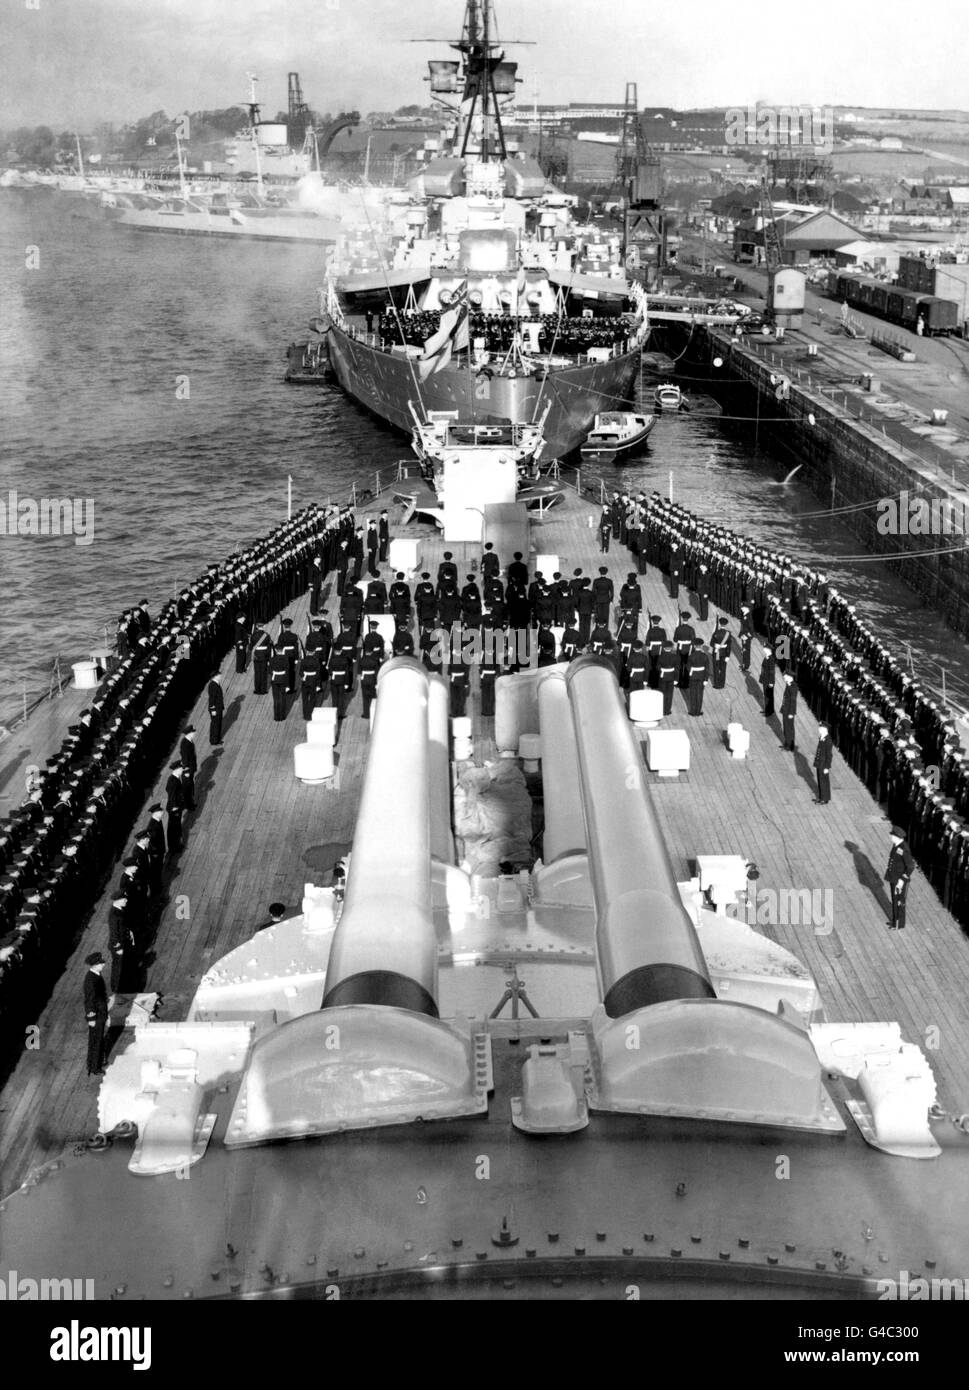 L'accession de la reine Elizabeth II est proclamée à bord du HMS Vanguard à Devonport. En arrière-plan, une cérémonie semblable est vue sur le HMS Howe. Banque D'Images